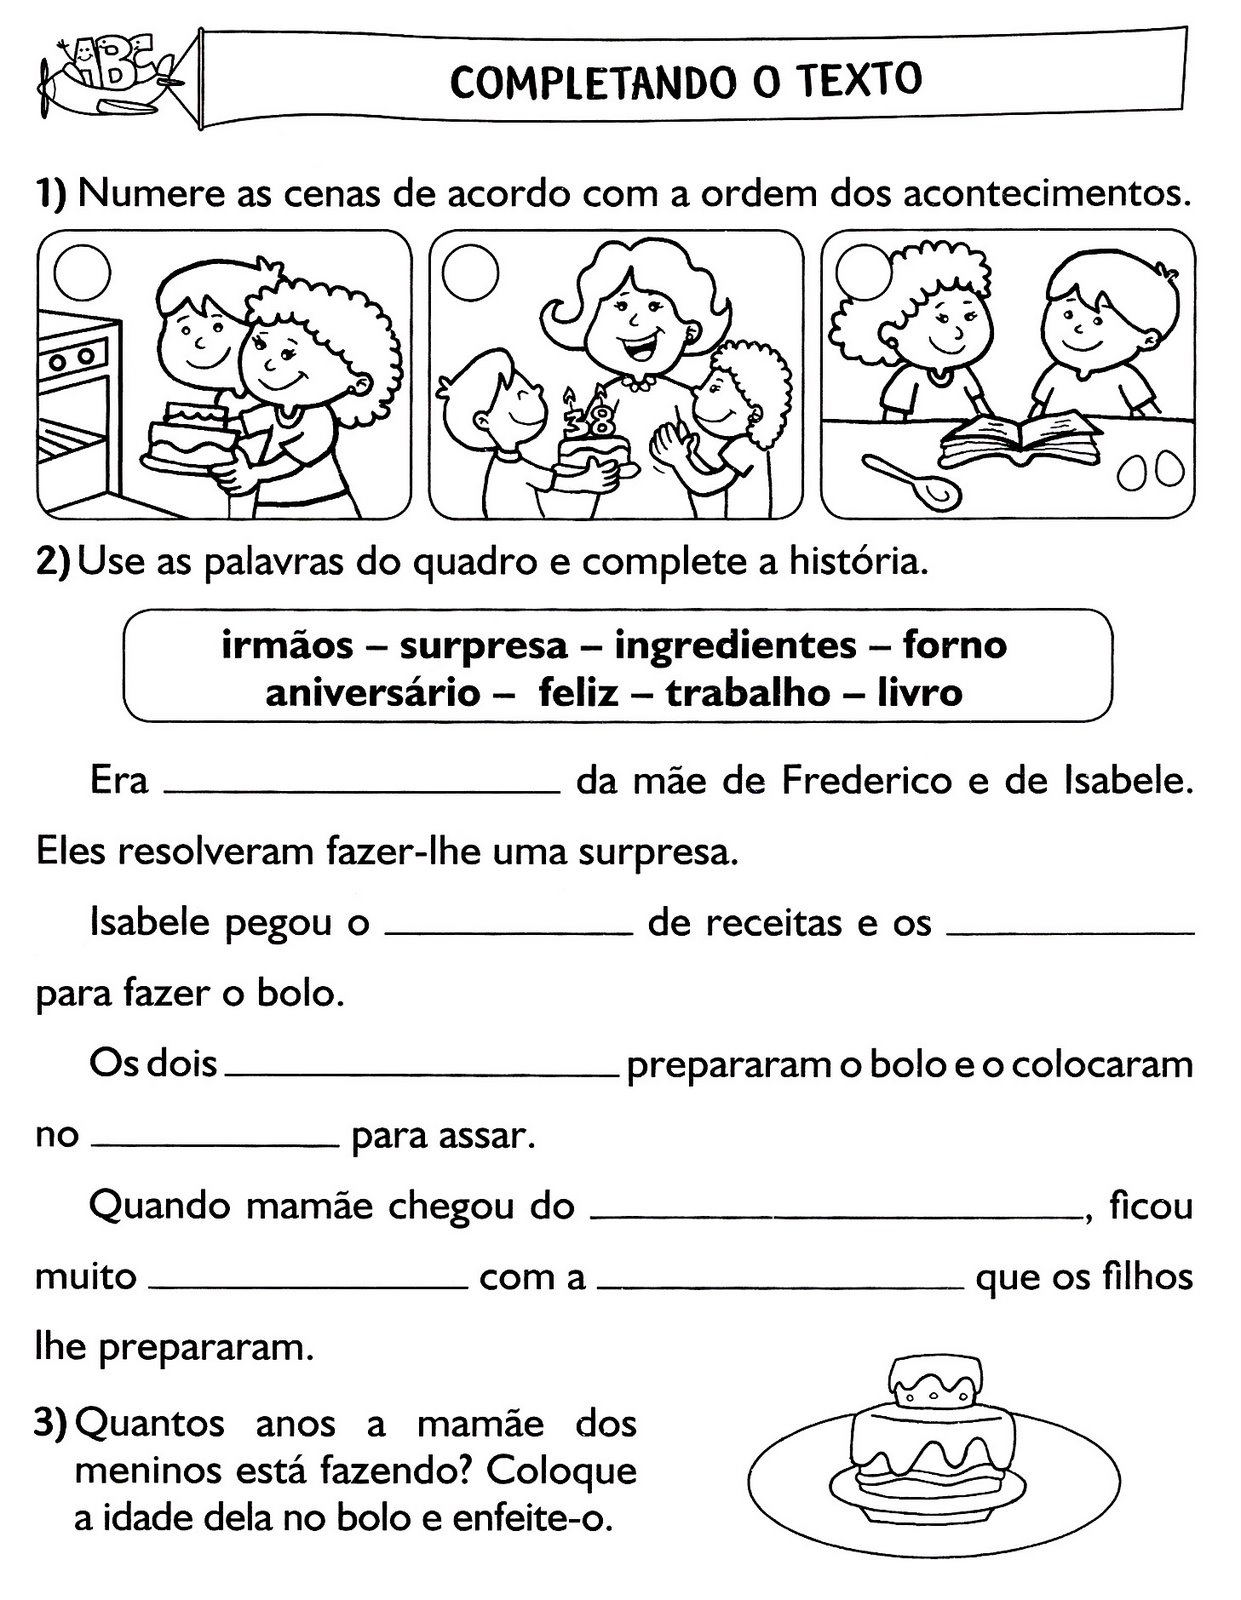 www.ensinar-aprender.blogspot.comhistória em sequencia com frases para completar